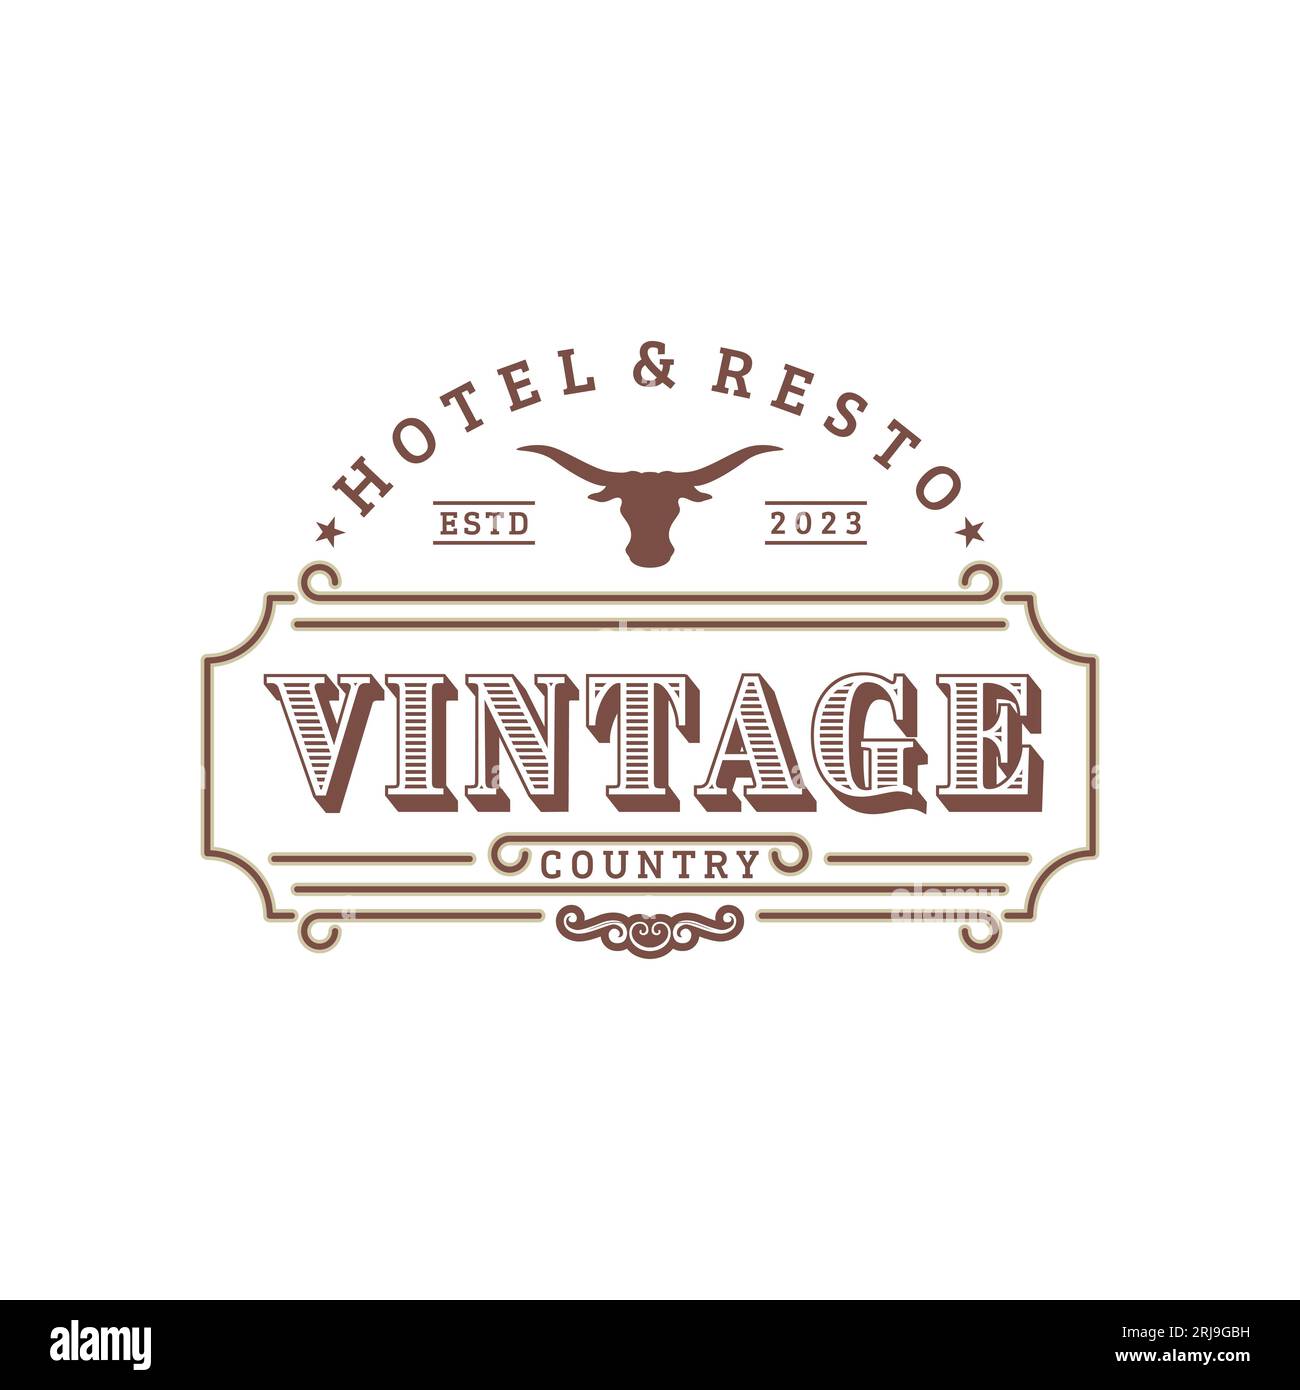 Vintage Emblem For Vintage Bar or Restaurant With Long Horn Icon Logo Design Inspiration Stock Vector